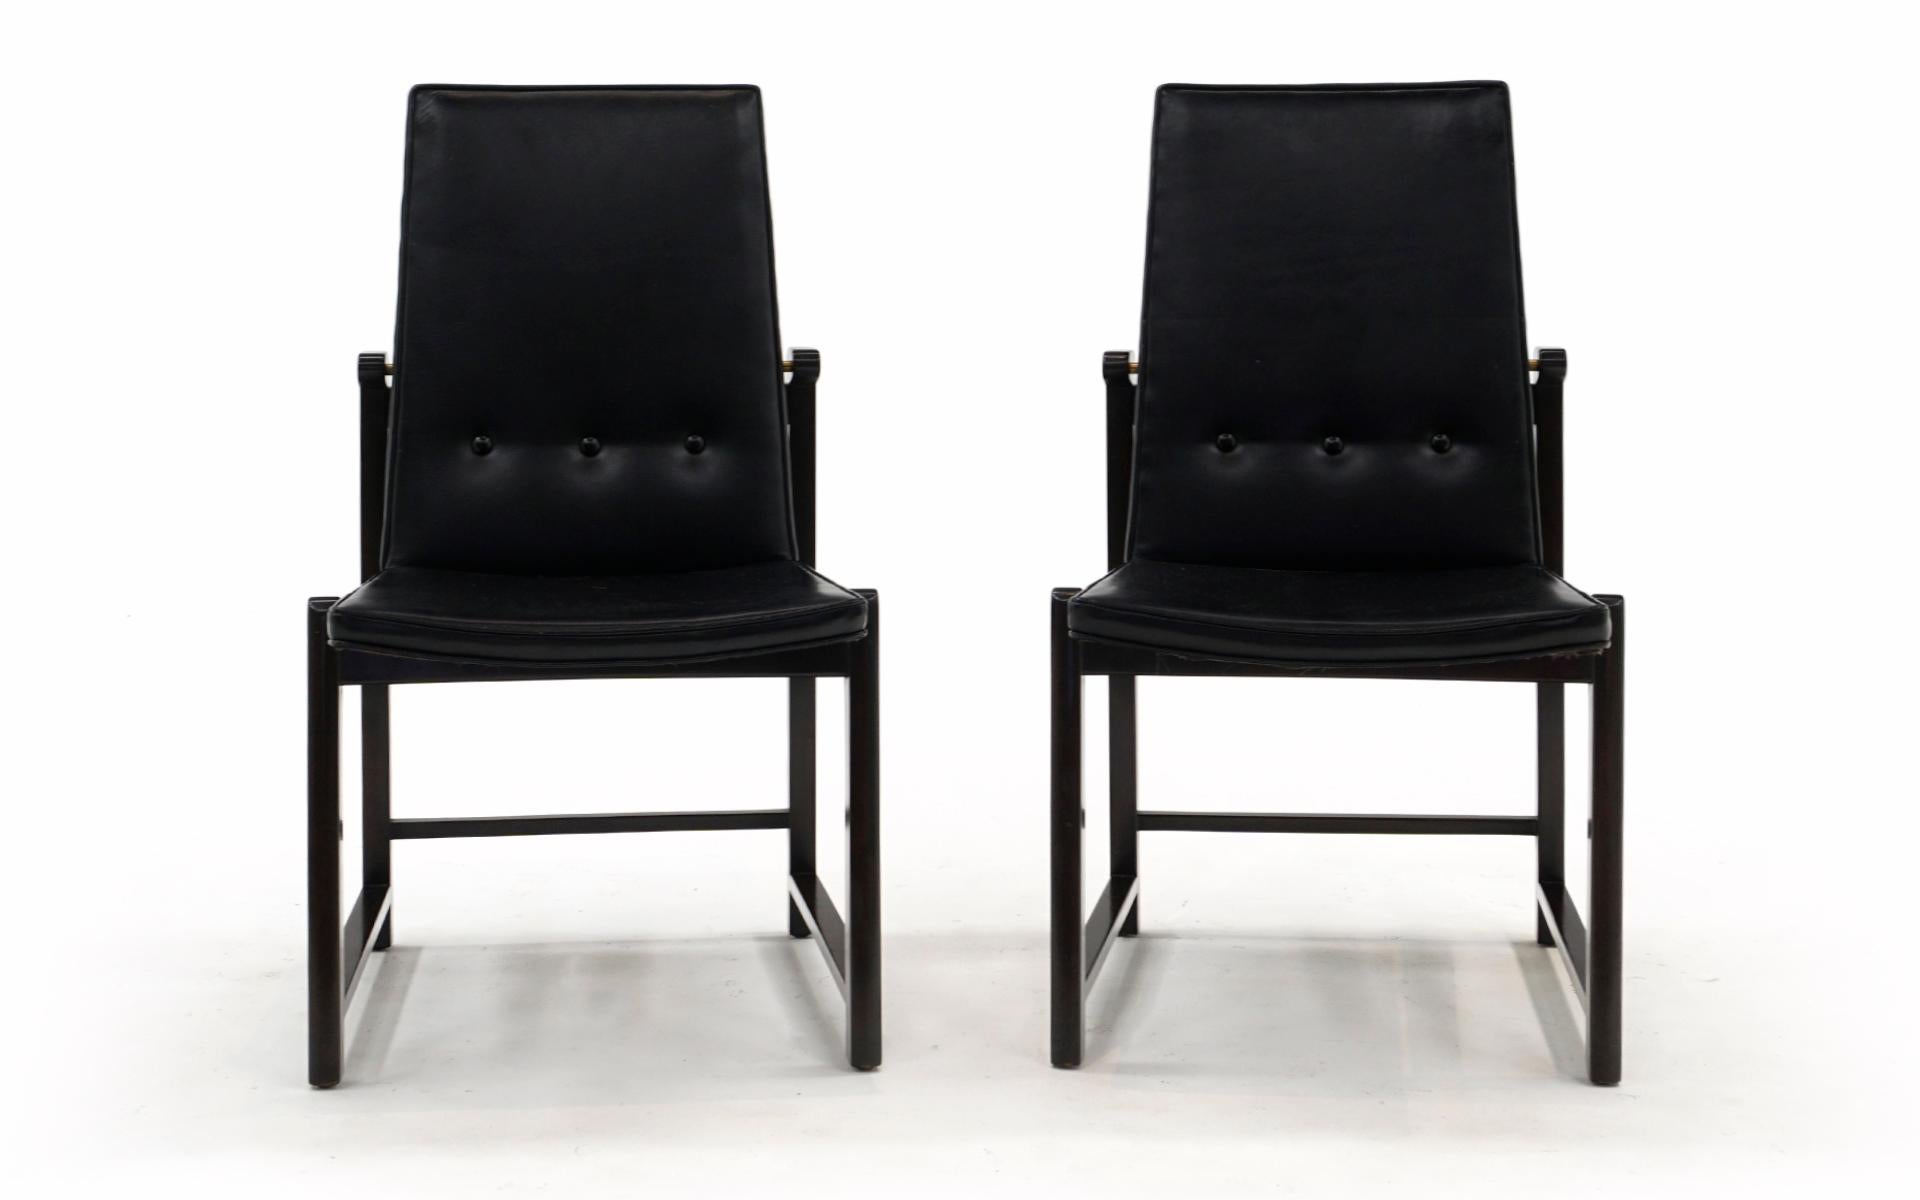 Très rares et désirables chaises de salle à manger Dunbar à haut dossier conçues par Edward Wormley. Les deux chaises sont complètement originales. Le cuir noir d'origine n'a pas de déchirures, d'éraflures ou de réparations et présente un léger